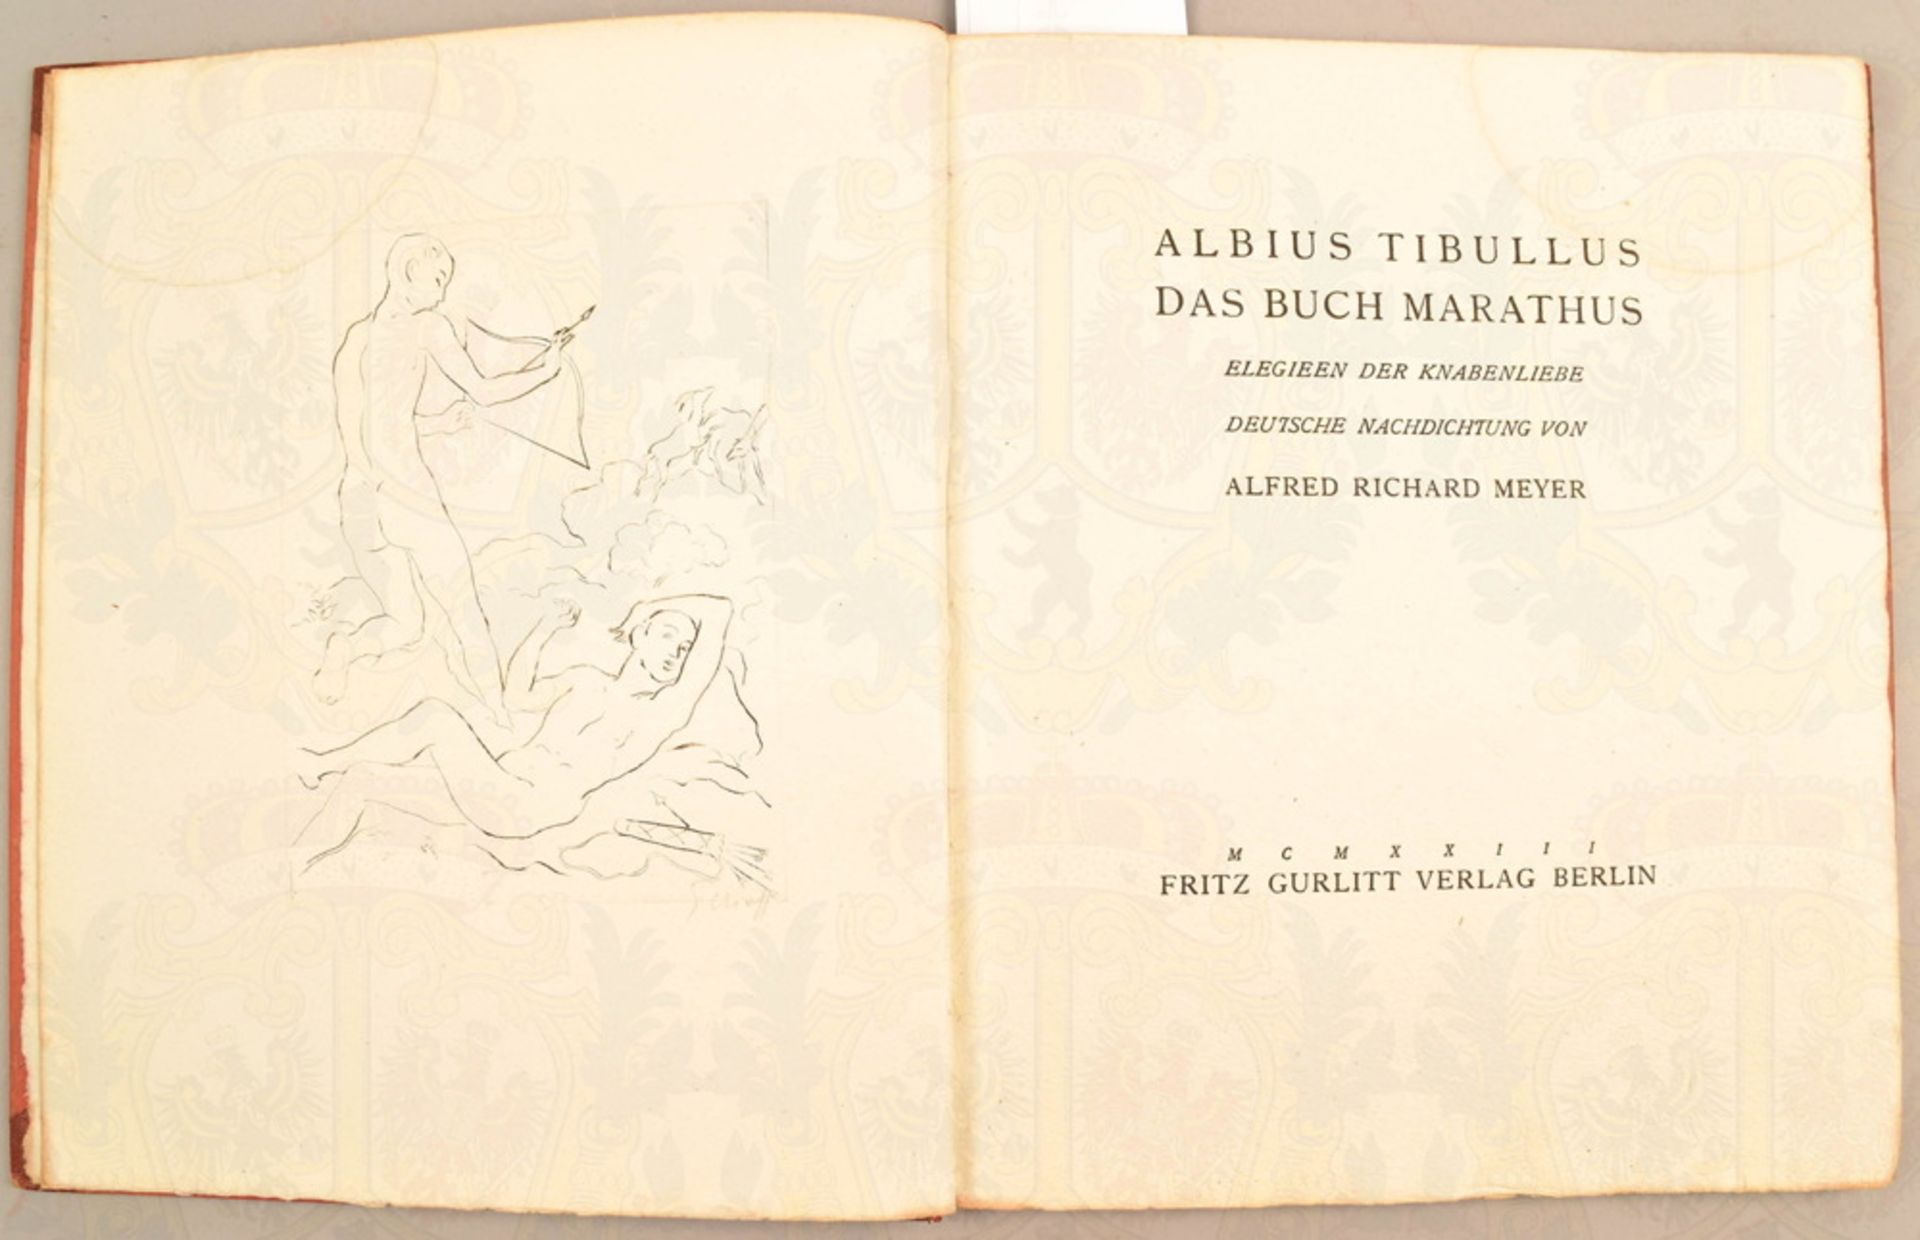 Albius Tibullus - The Marathus Book 1923 - Image 2 of 3